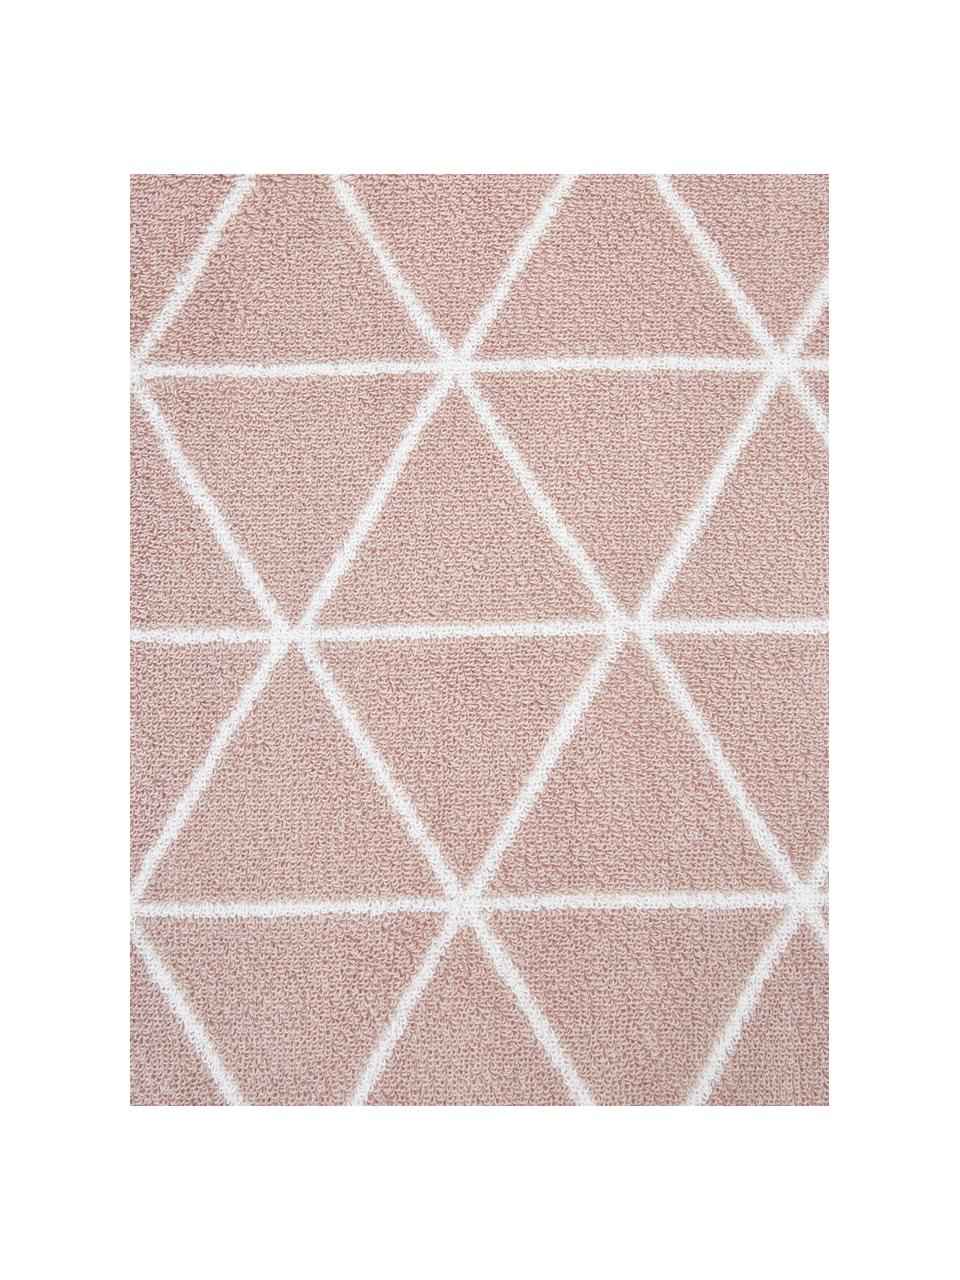 Wende-Handtuch Elina mit grafischem Muster in verschiedenen Grössen, Rosa, Cremeweiss, Handtuch, B 50 x L 100 cm, 2 Stück